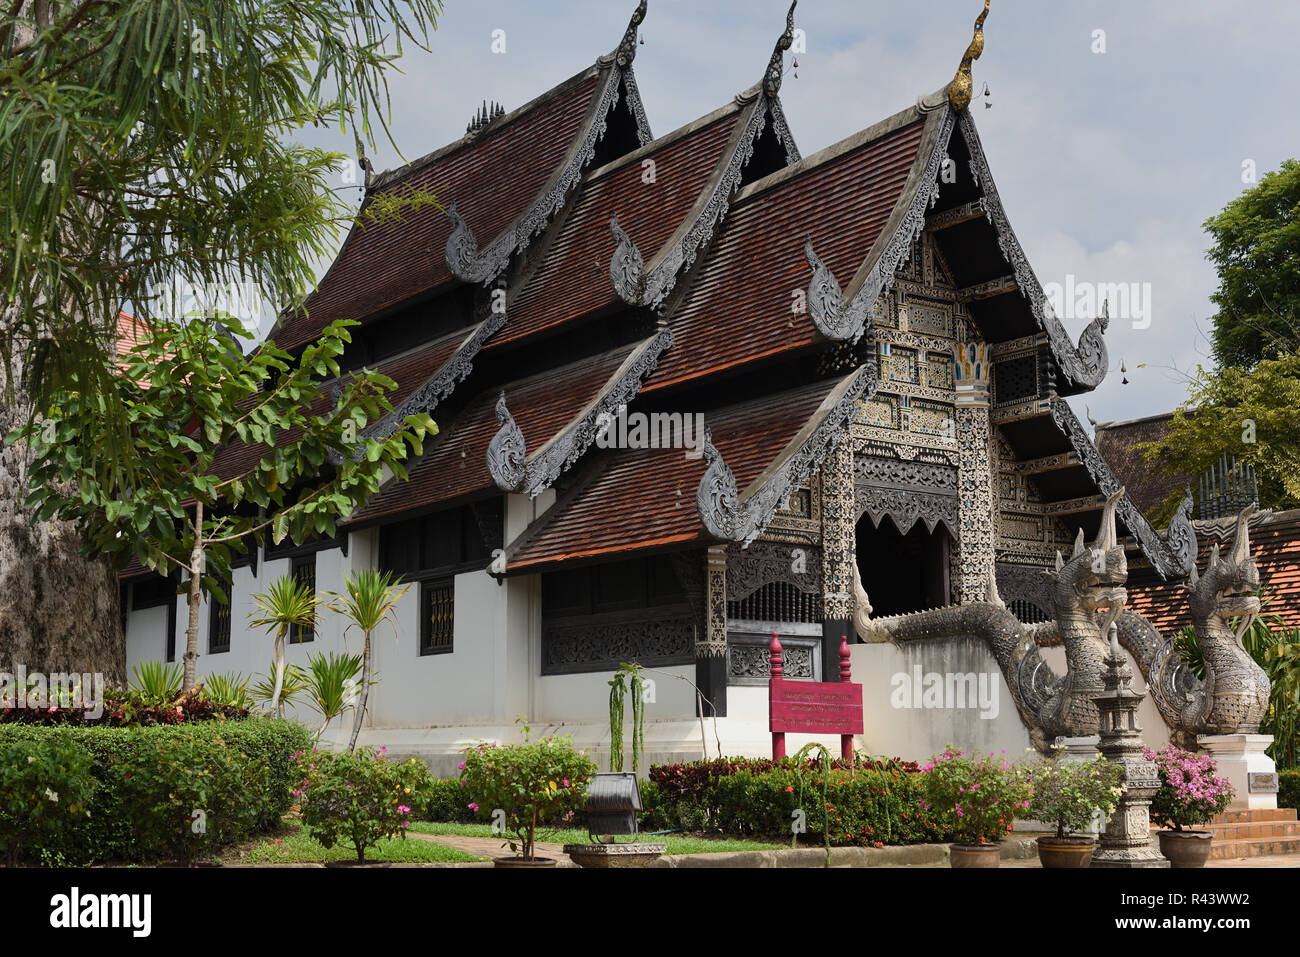 Sanctuaire de Viharn Luang, également connu sous le nom de la ville pilier, dans le parc de Wat Chedi Luang, Chiang Mai, Thaïlande Banque D'Images